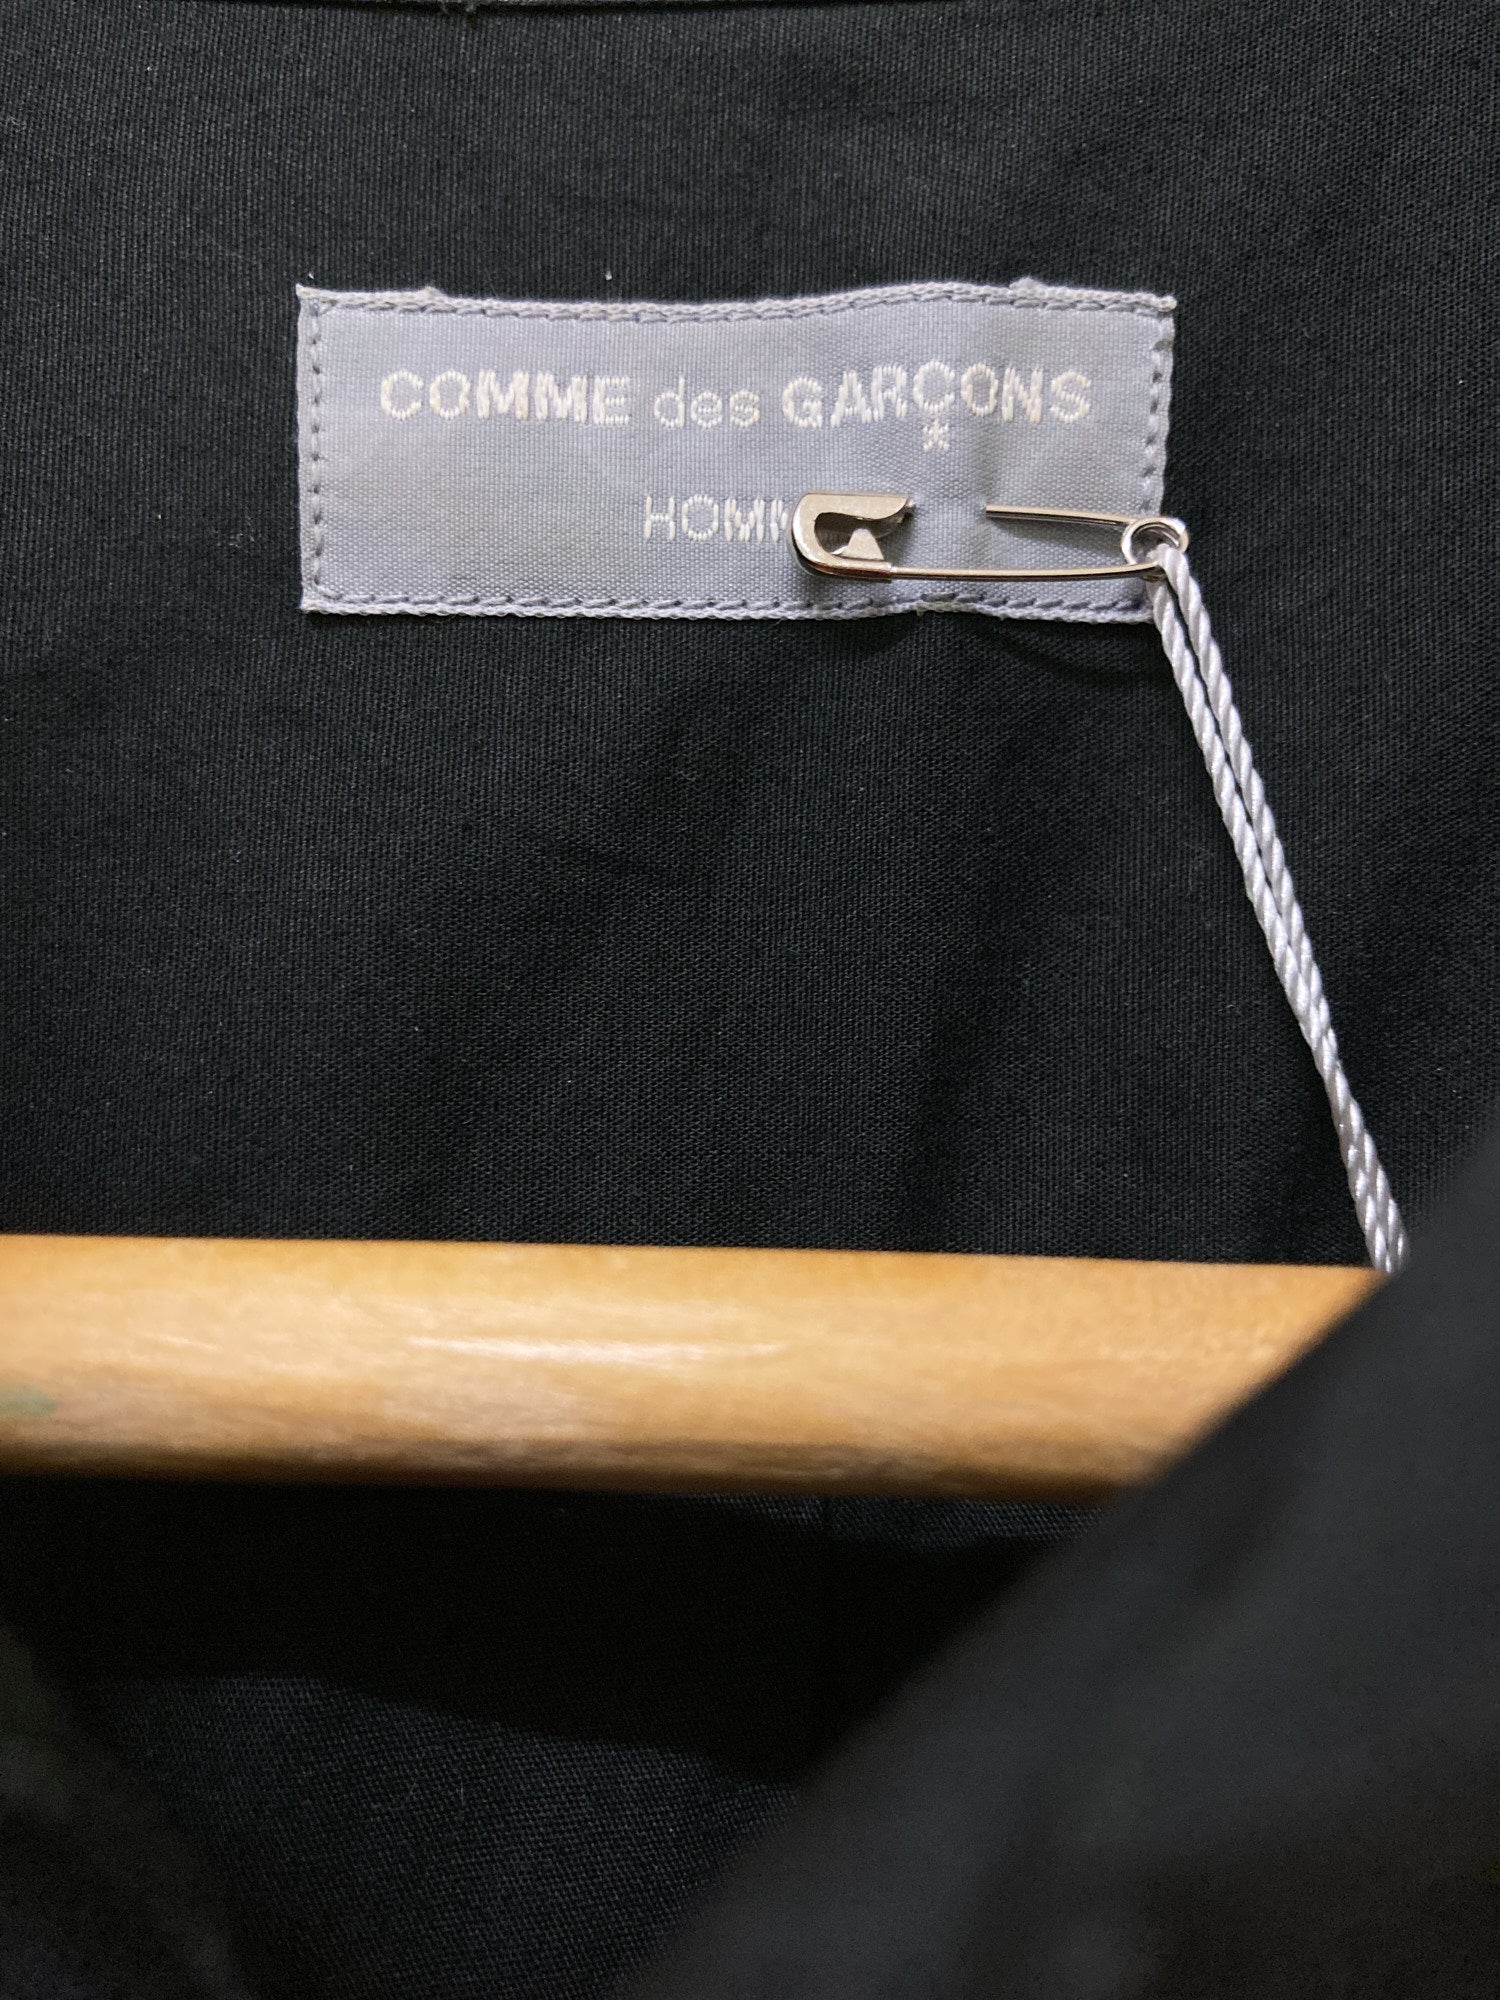 Comme des Garcons Homme 1996 black cotton shirt with transparent vinyl hem - M L